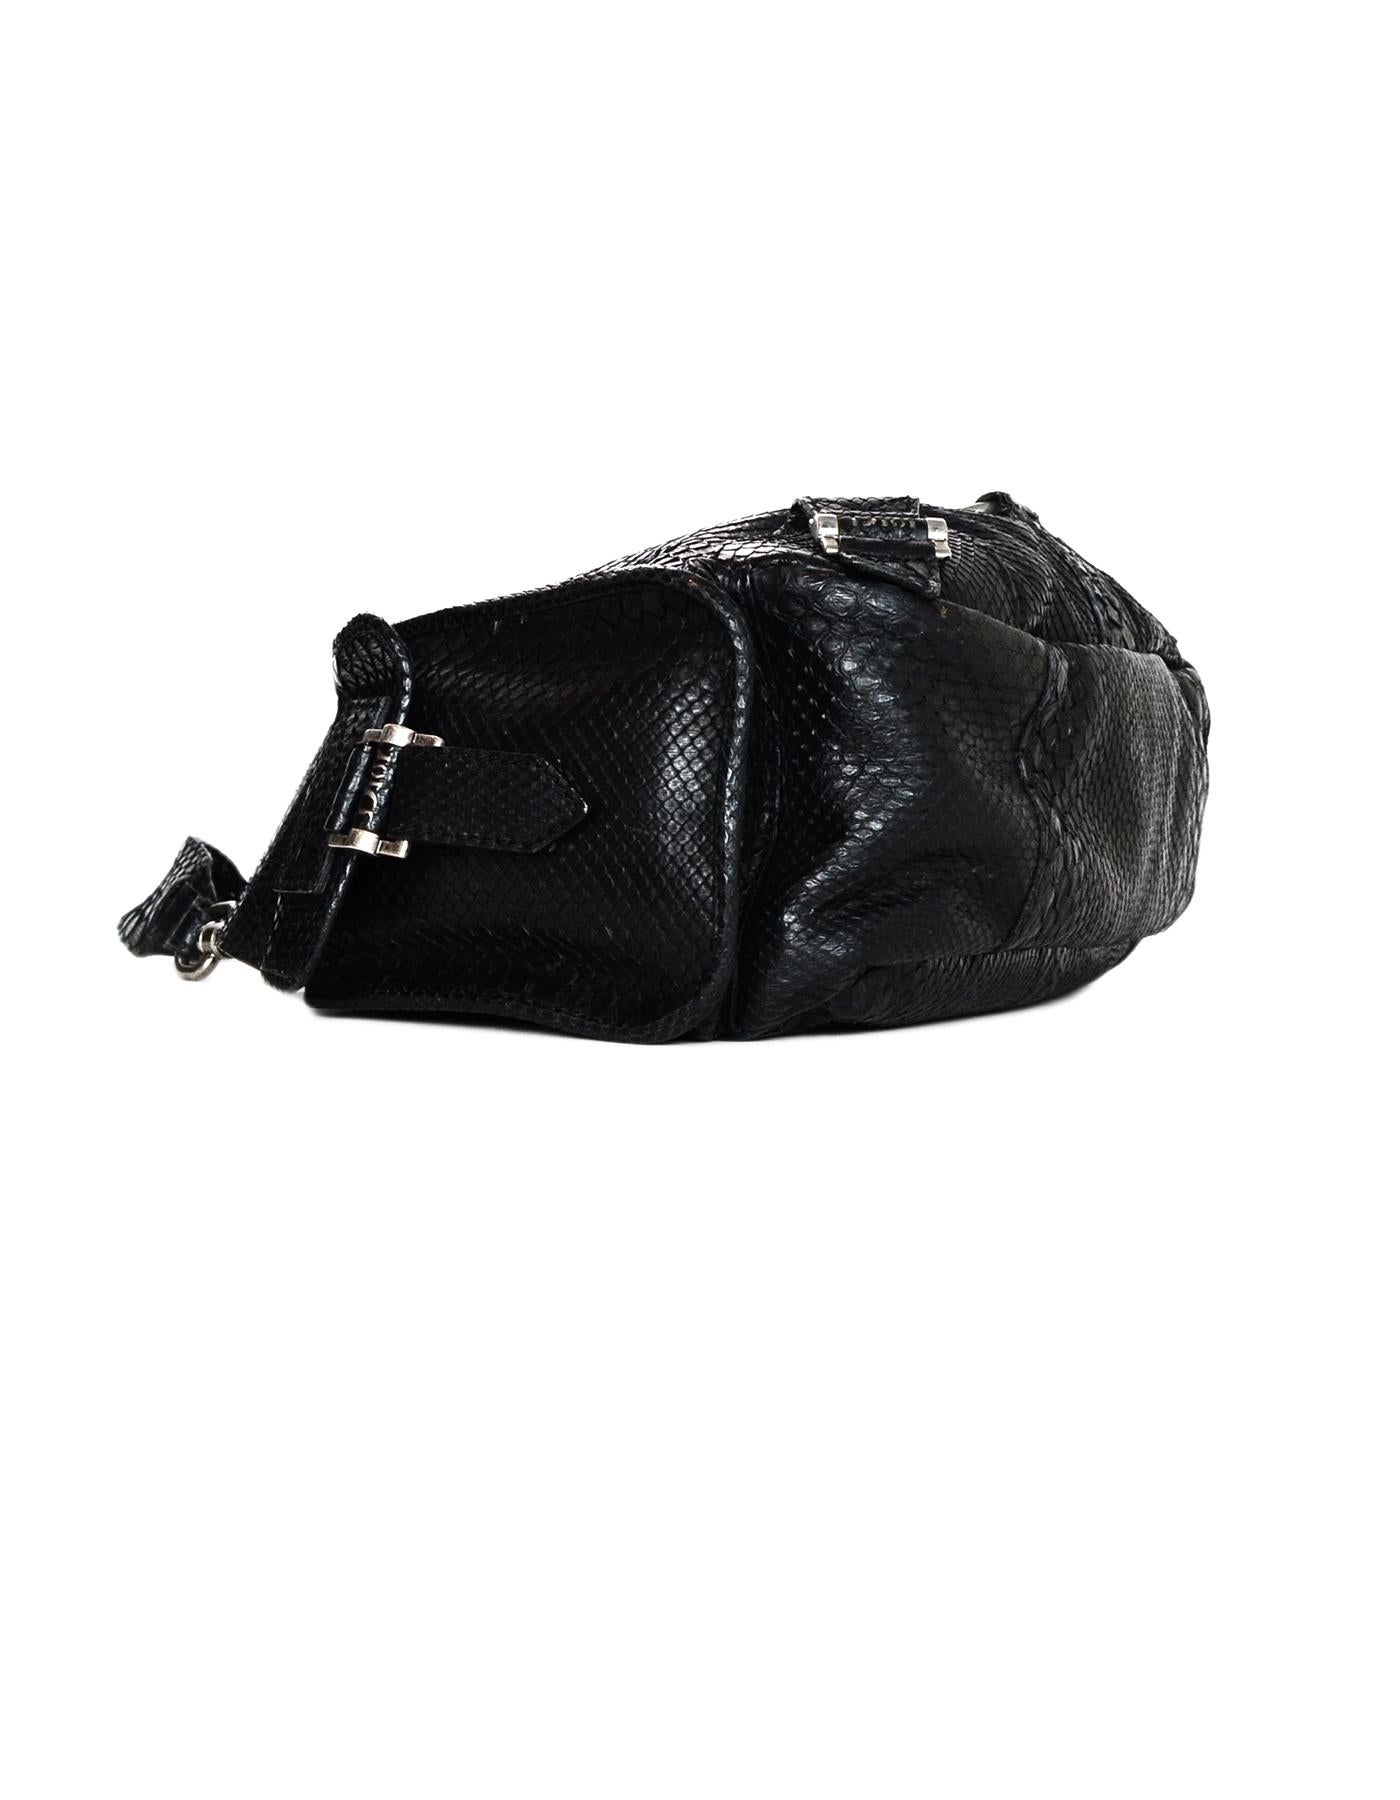 Women's Christian Dior Limited Edition Black Python Shoulder Bag w/ Side Pockets